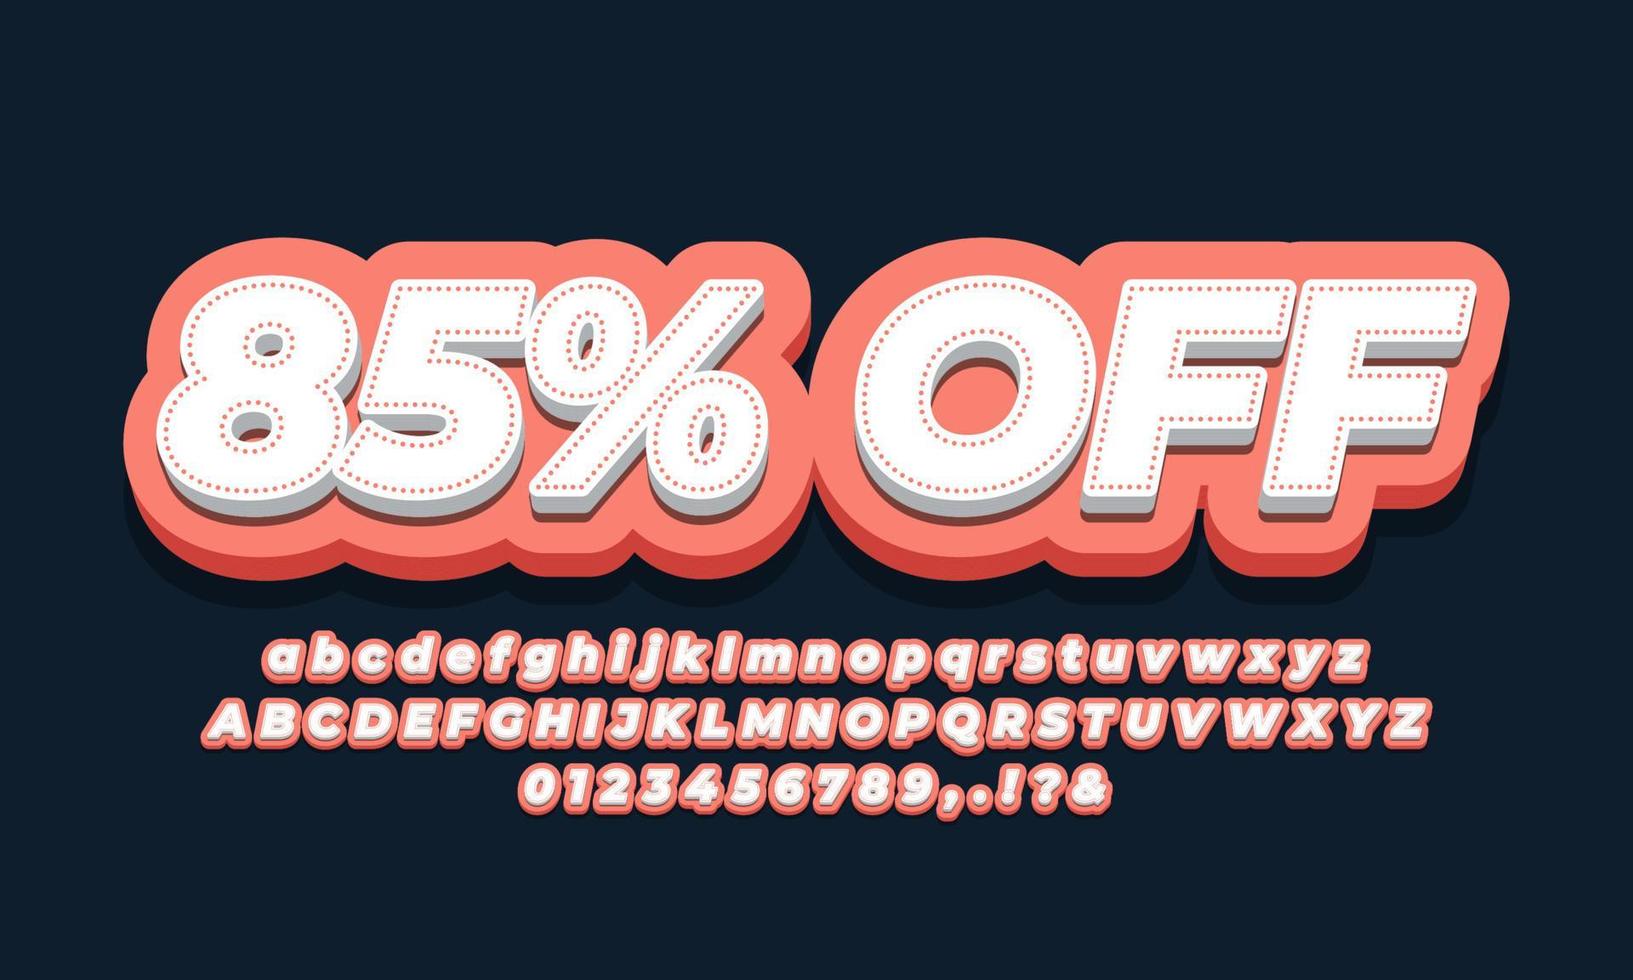 85 percent off sale discount promotion 3d orange vector